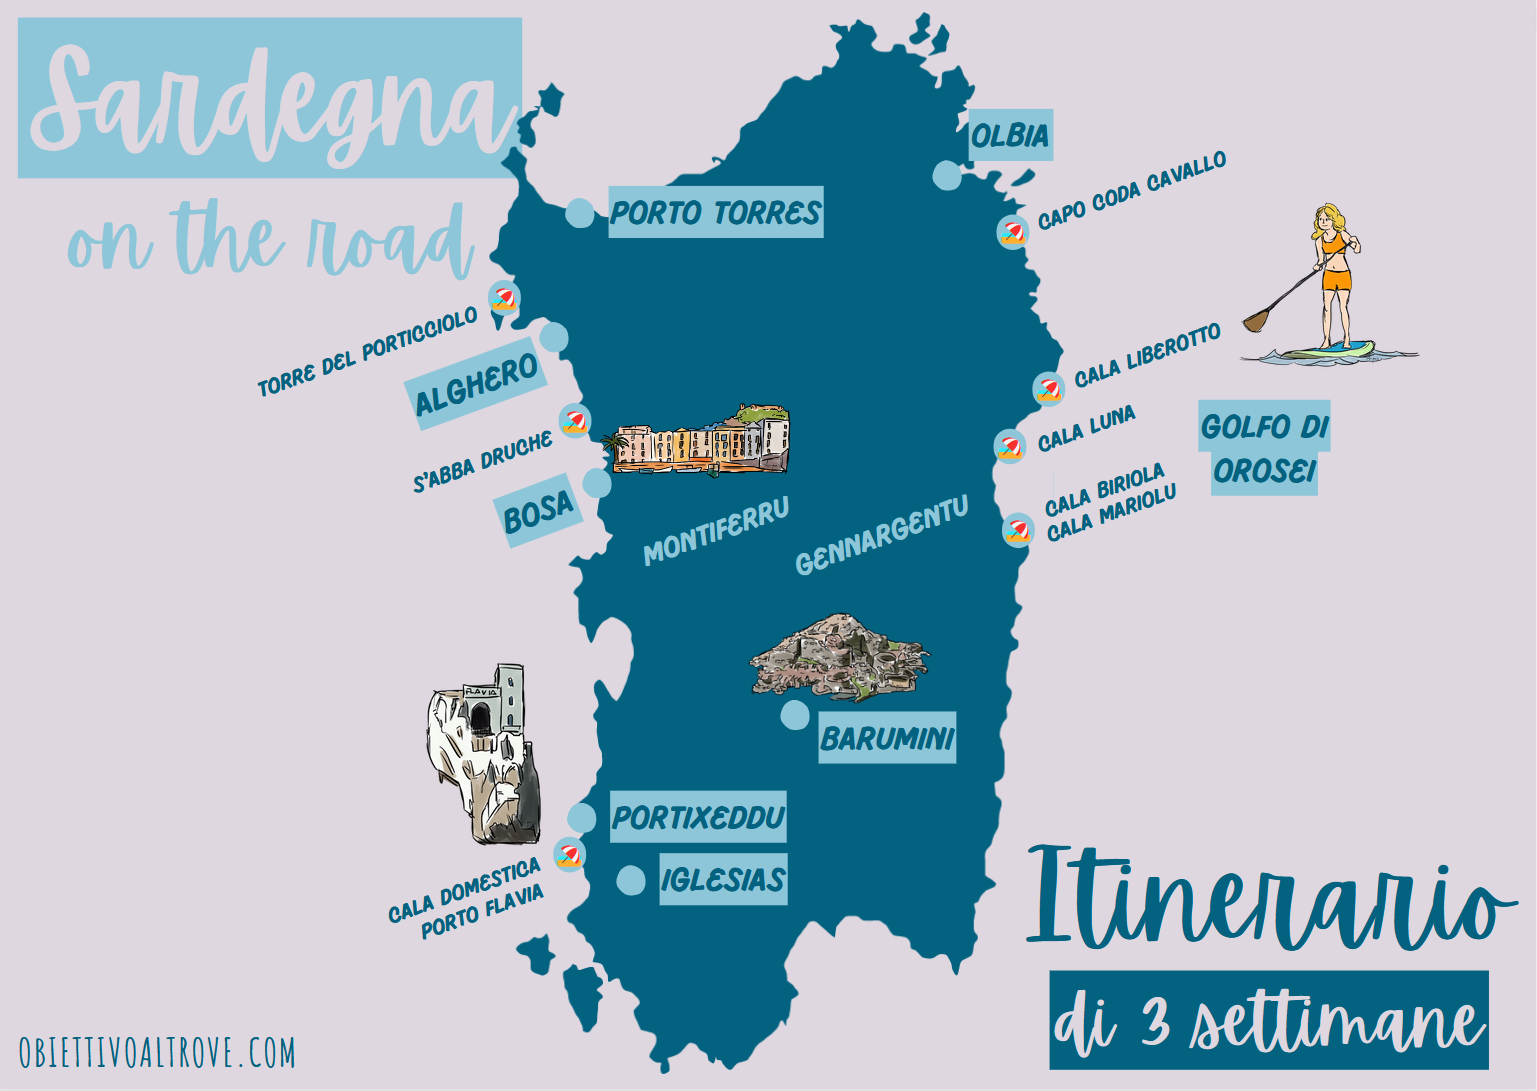 Mappa Sardegna on the road - Itinerario di 3 settimane in macchina e tenda